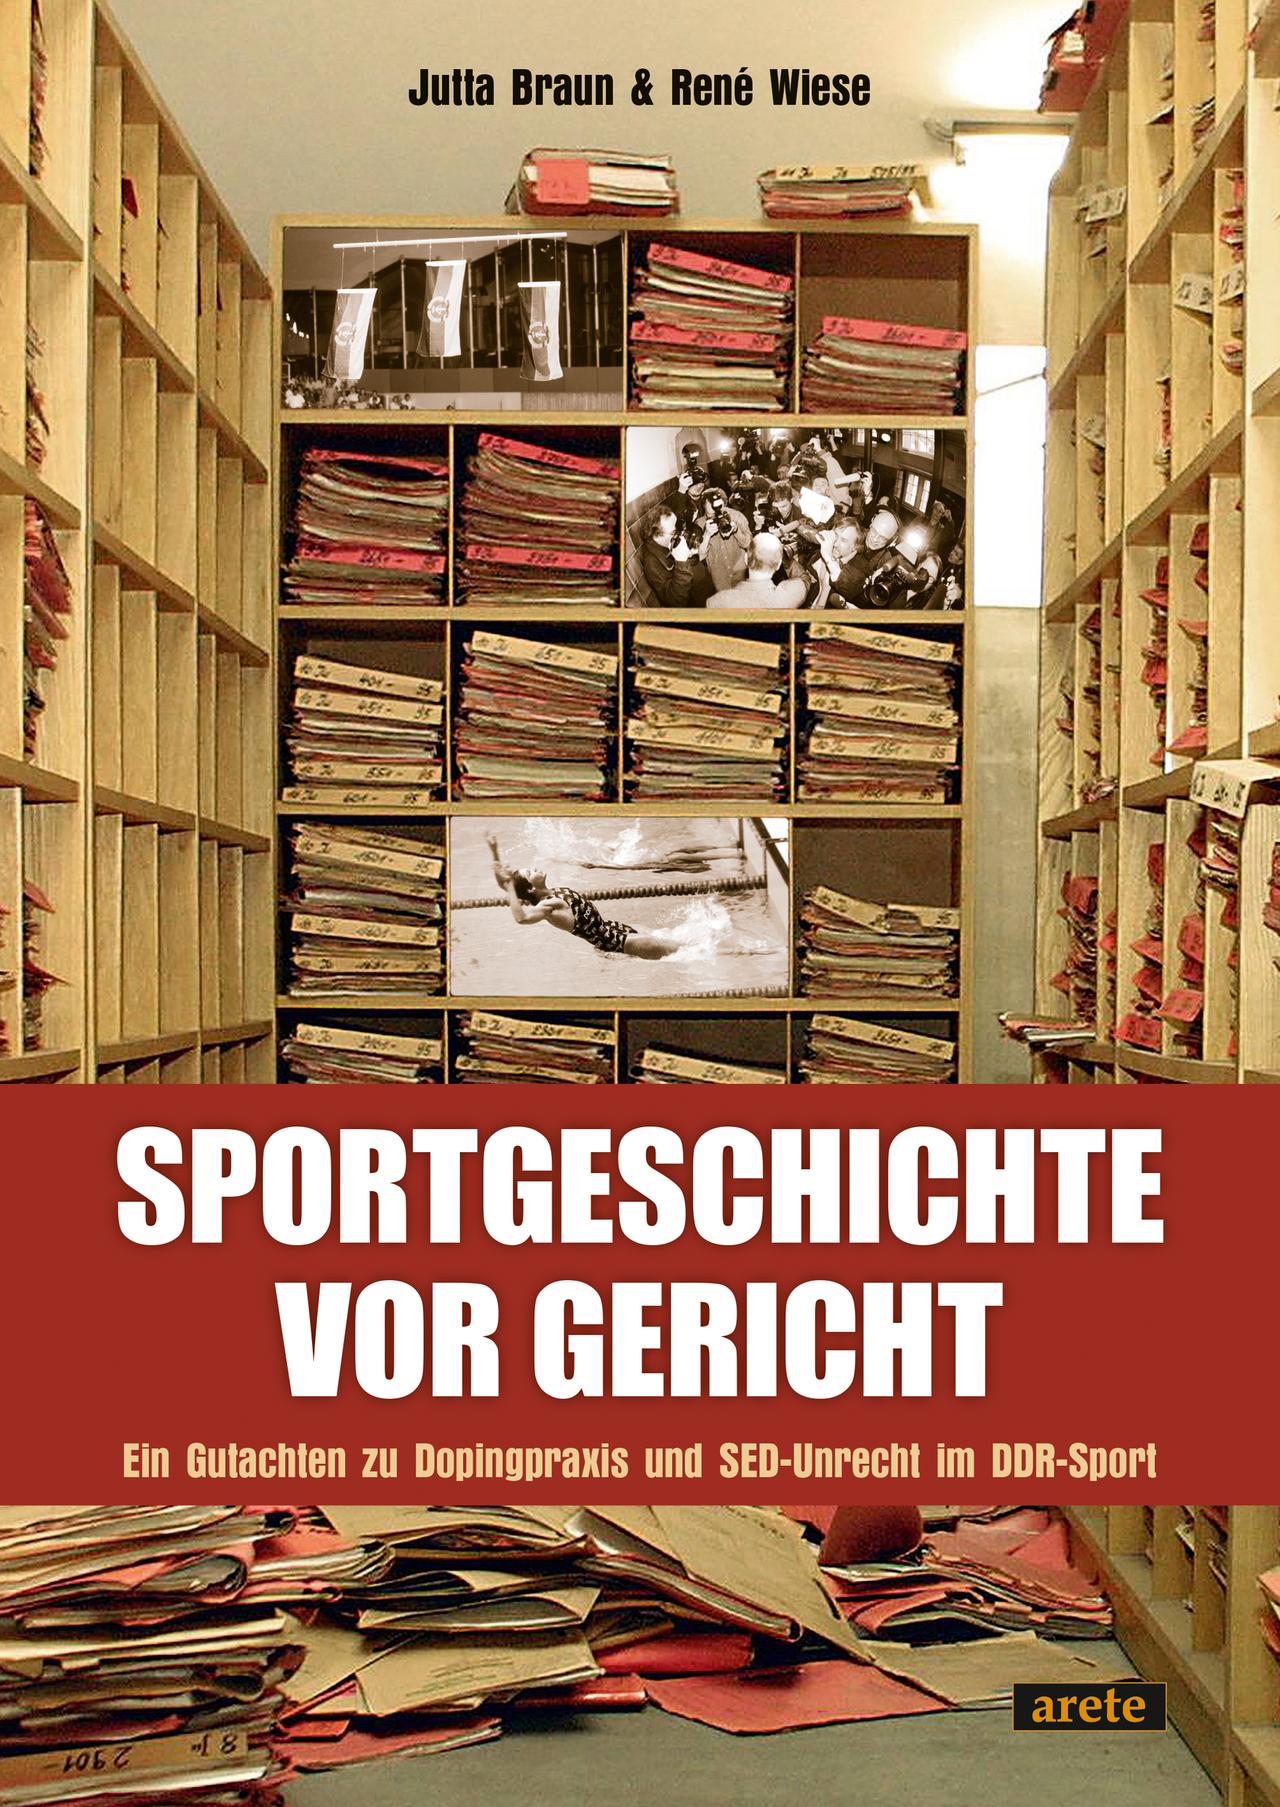 Cover des Buchs "Sportgeschichte vor Gericht". Ein Gutachten zu Dopingpraxis und SED-Unrecht im DDR-Sport von René Wiese und Jutta Braun. 